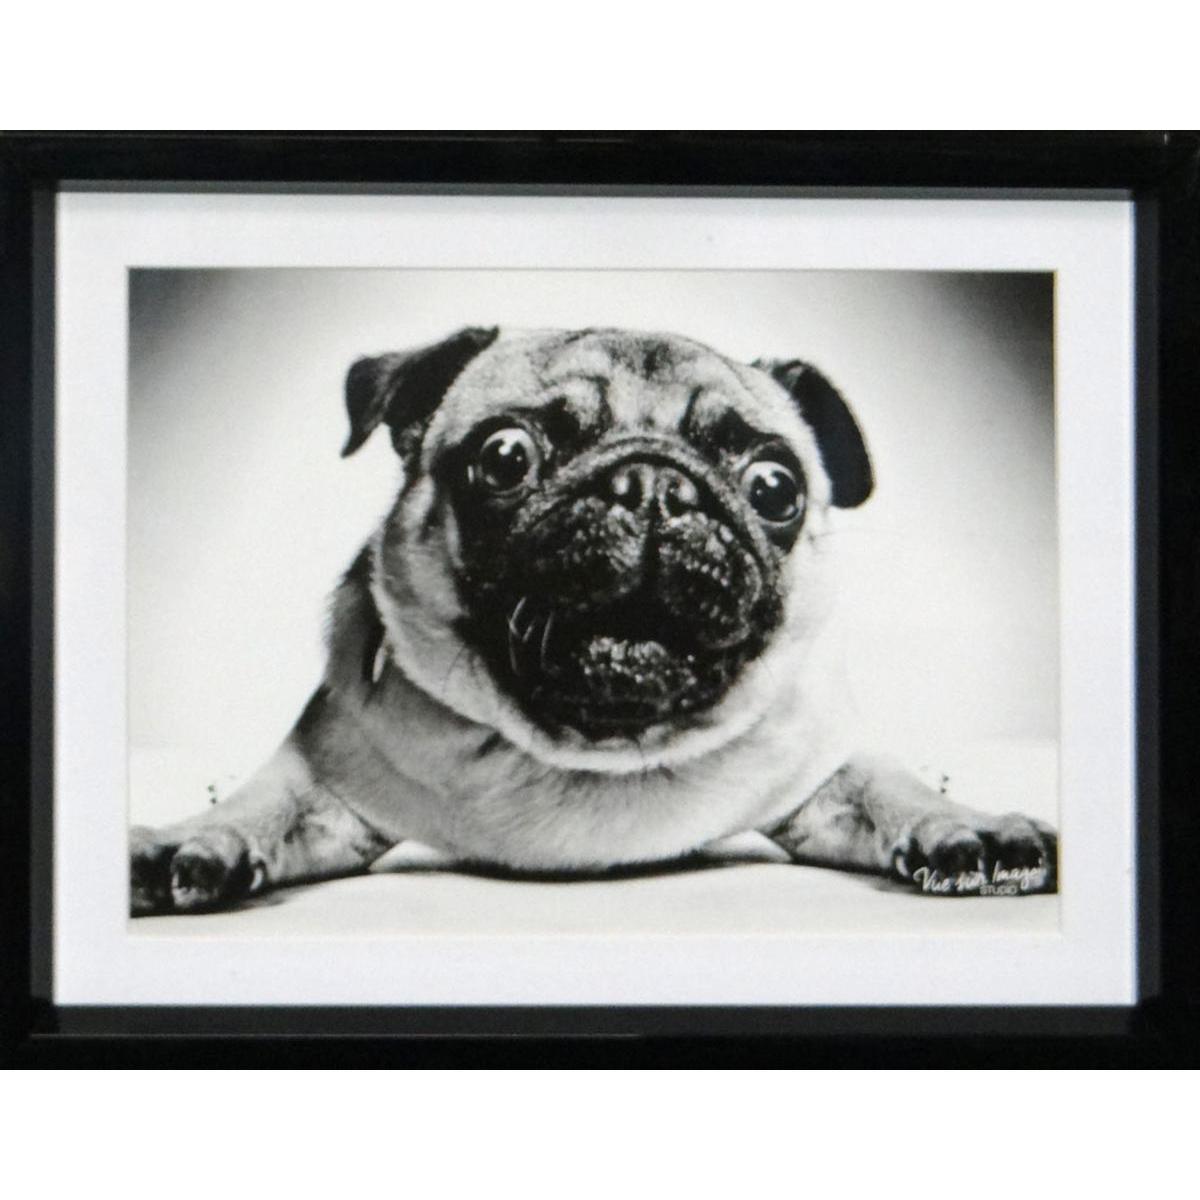 Cadre photo décoratif - Plastique - 25 x 20 cm - Noir et blanc